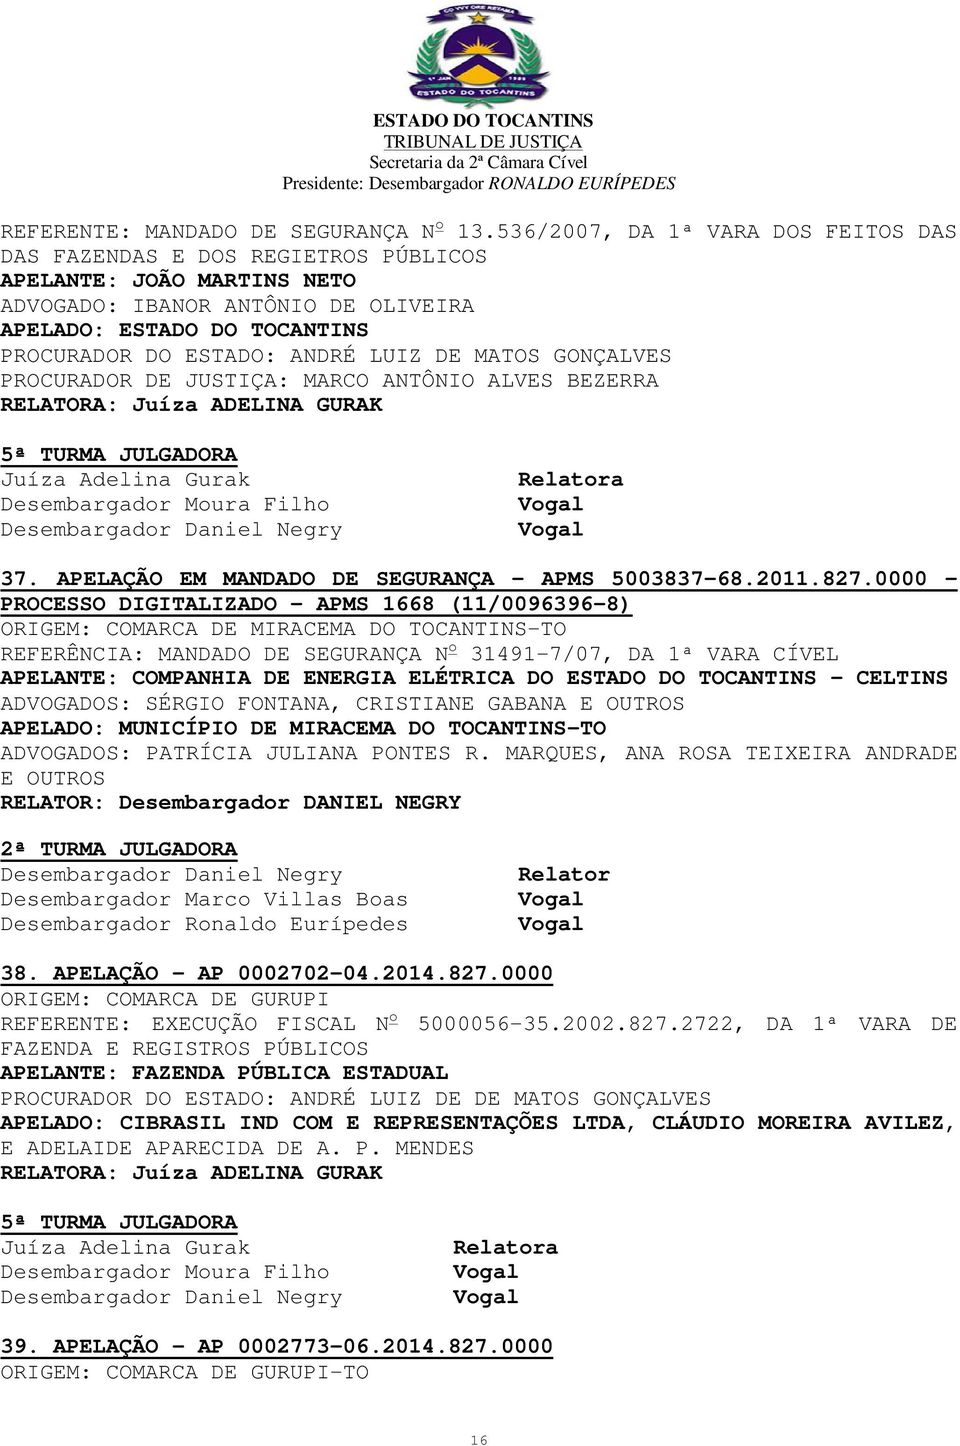 LUIZ DE MATOS GONÇALVES PROCURADOR DE JUSTIÇA: MARCO ANTÔNIO ALVES BEZERRA a 37. APELAÇÃO EM MANDADO DE SEGURANÇA - APMS 5003837-68.2011.827.